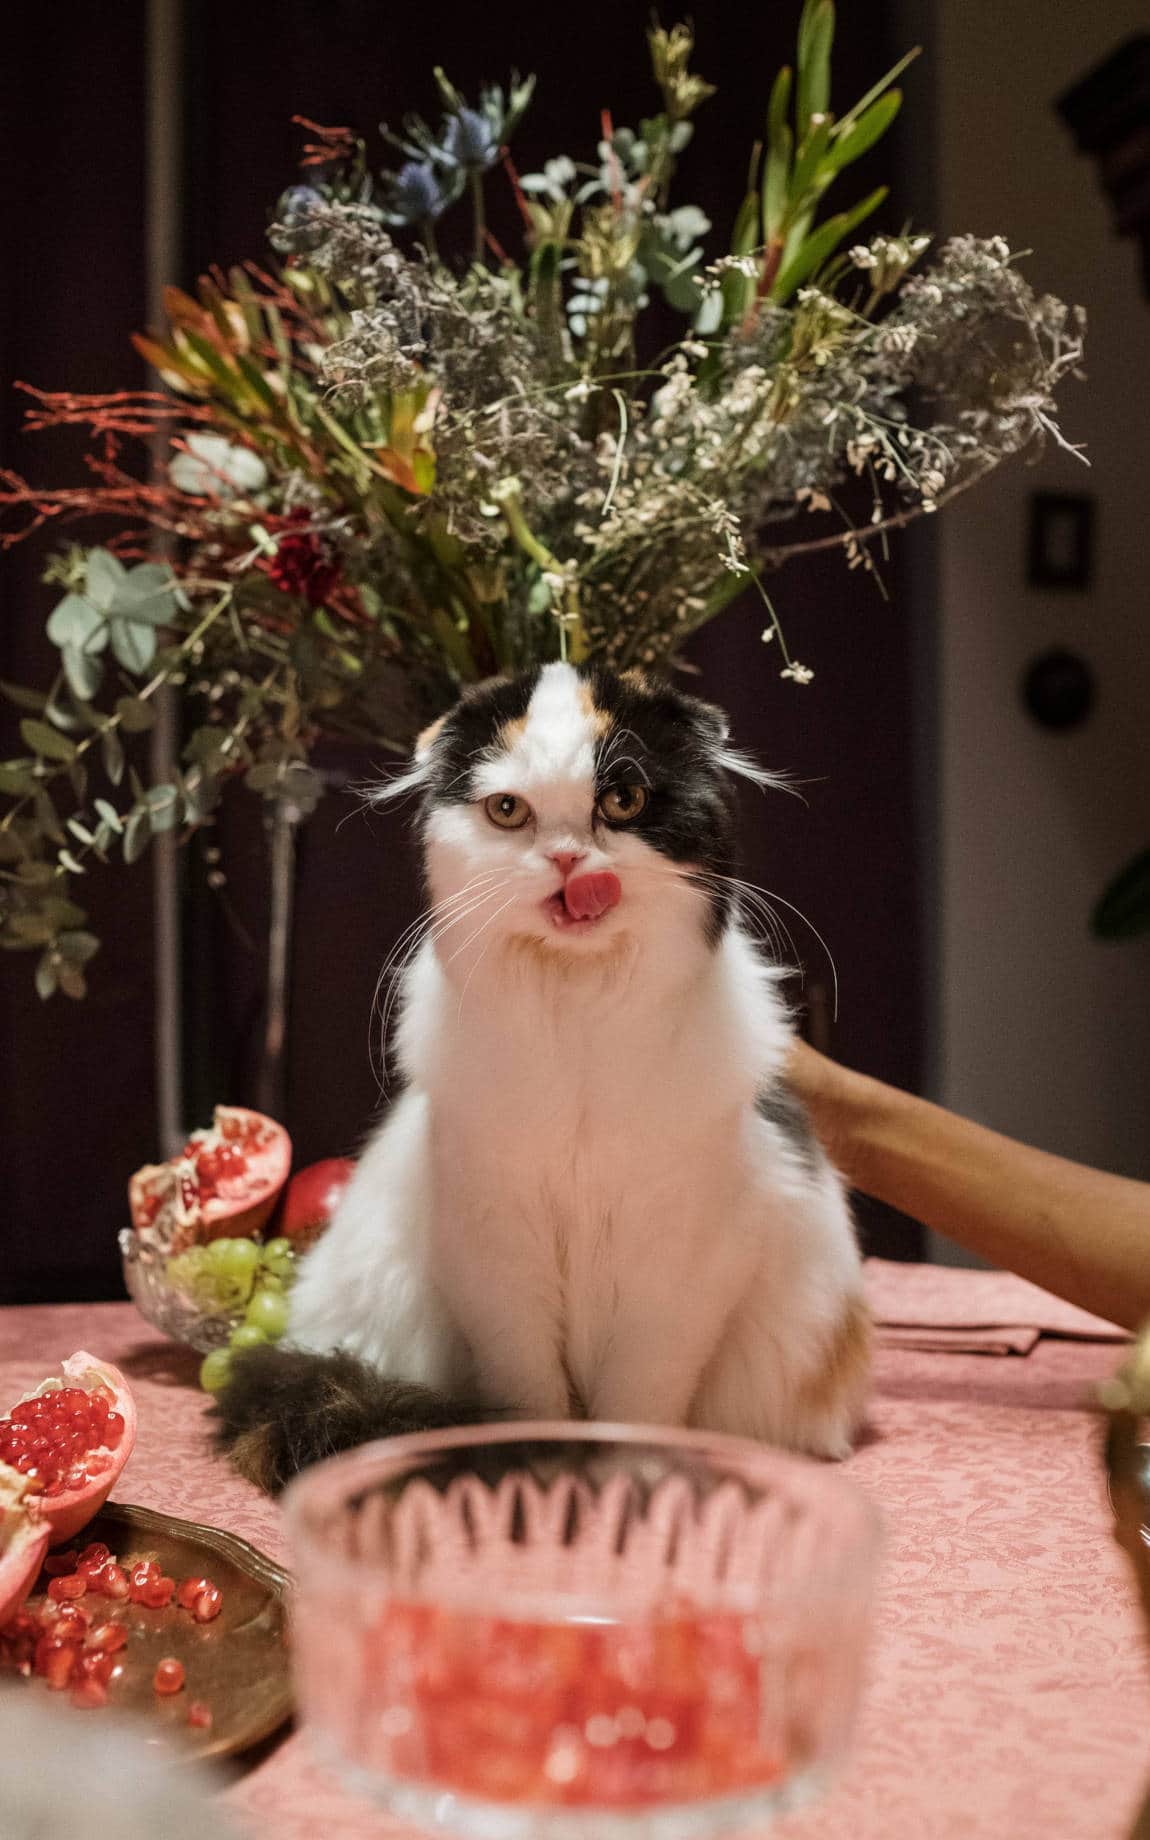 Blumenstrauß mit einer Katze auf dem Tisch